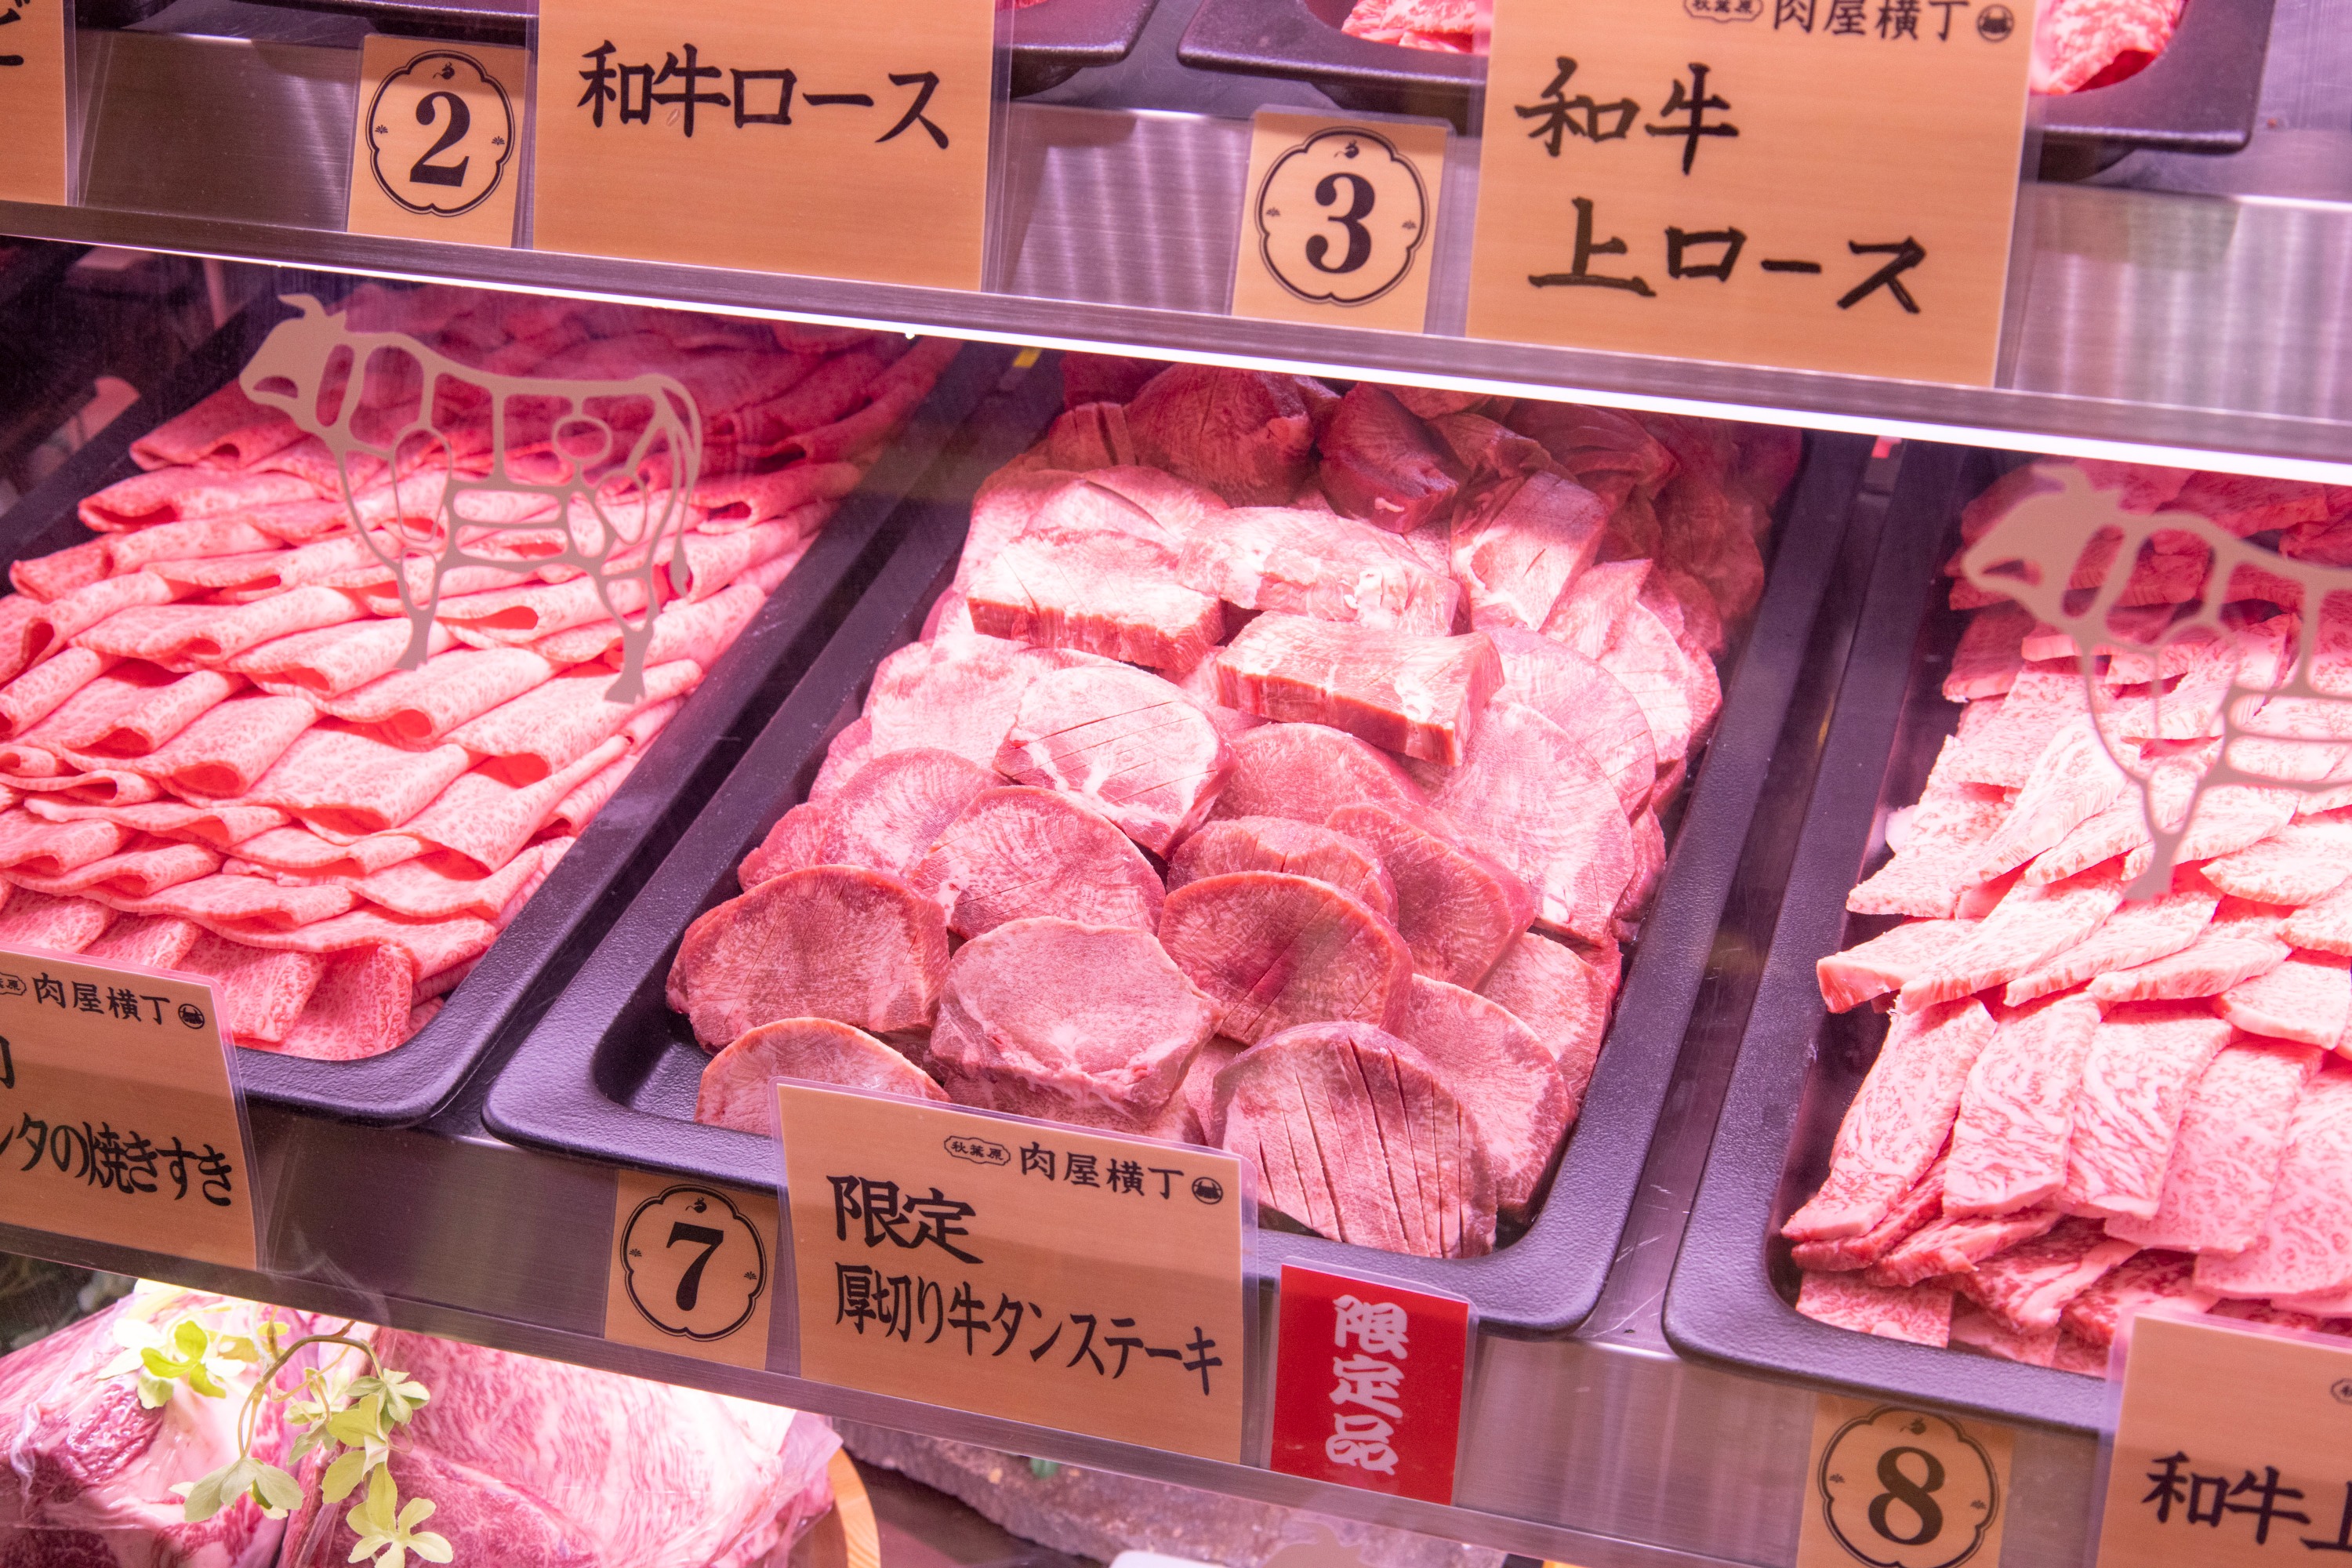 All-you-can-eat Japanese Beef Hall Akihabara Meat House Yokocho - Yakiniku, in Akihabar